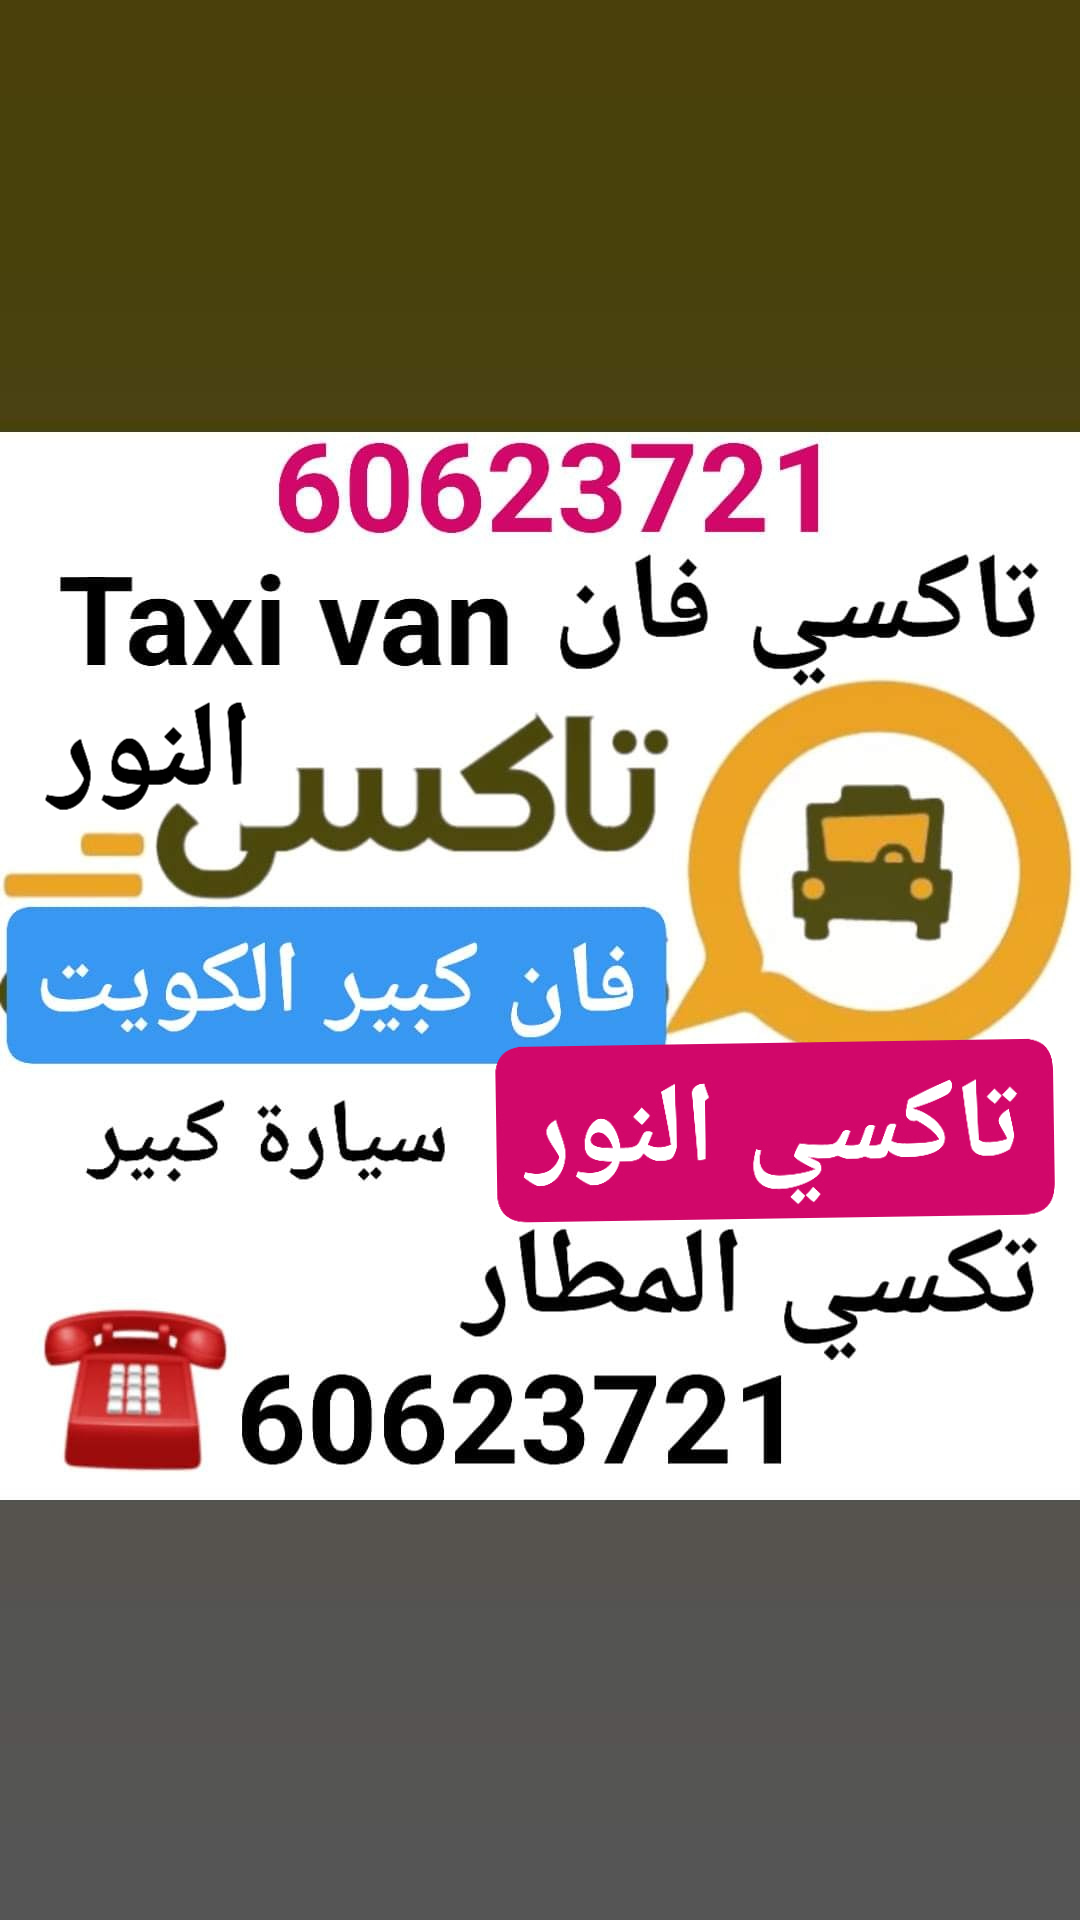 Taxi van | 60623721